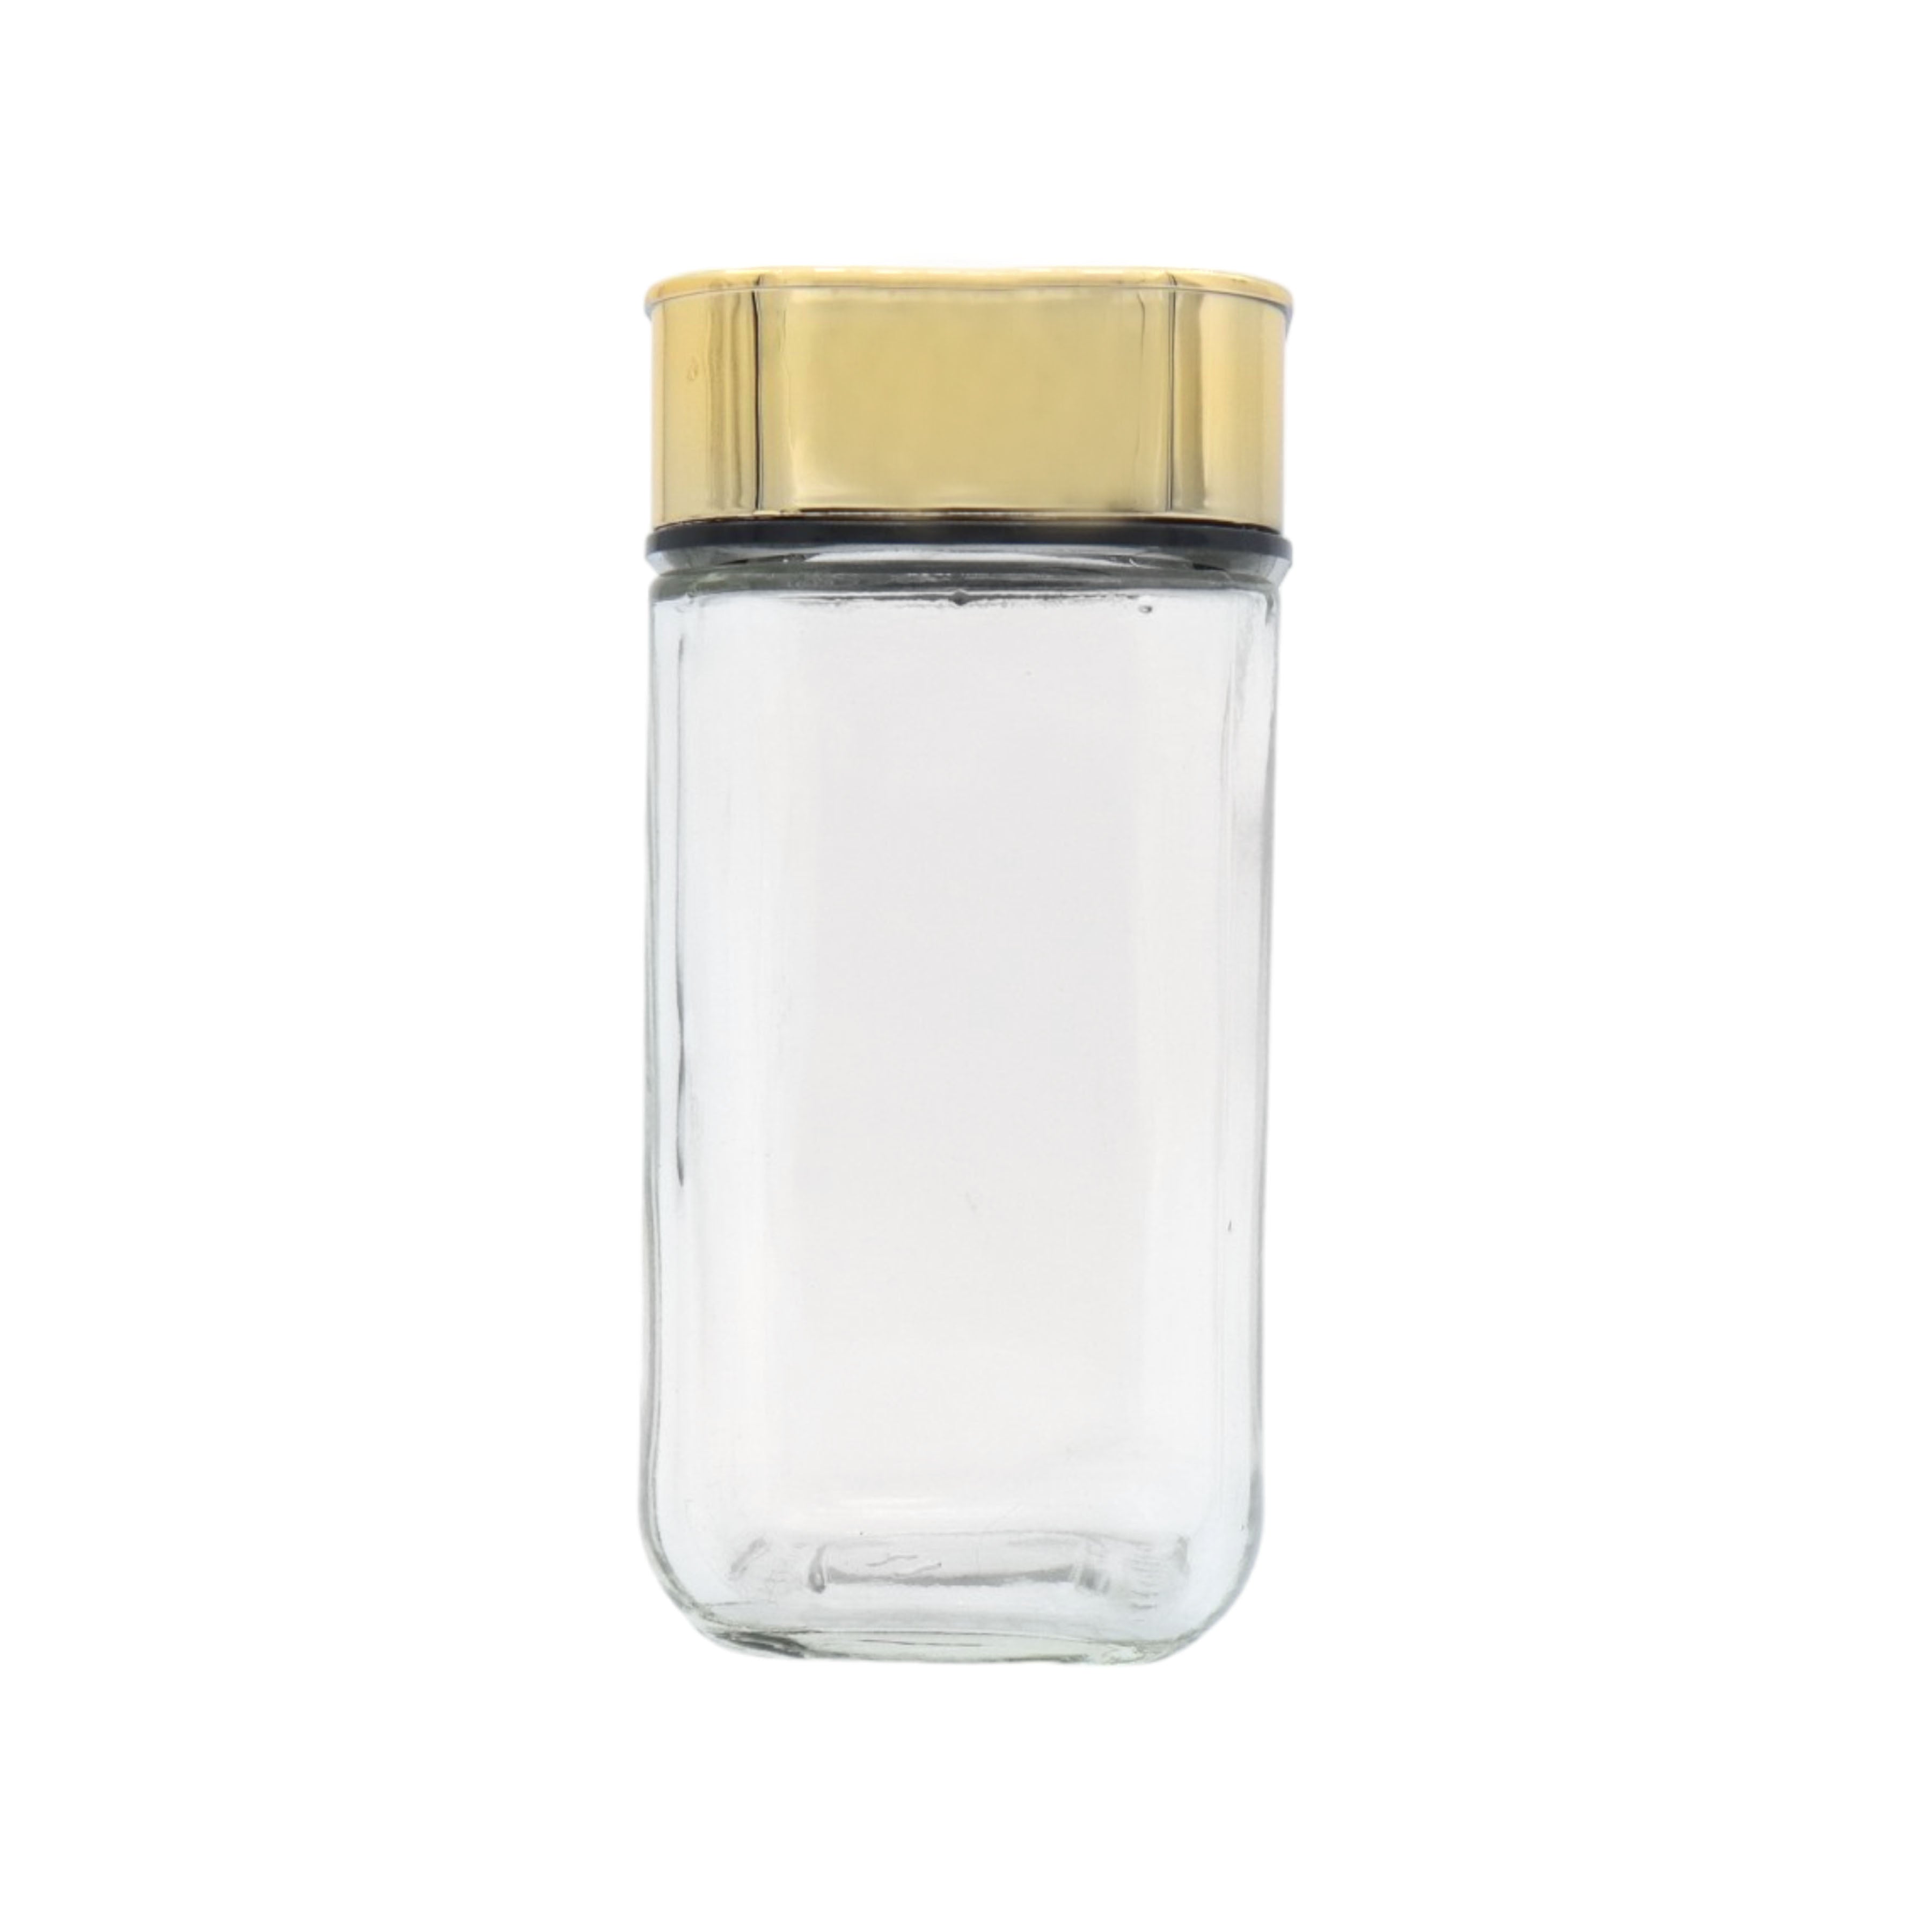 Glass Spice Shaker Bottle